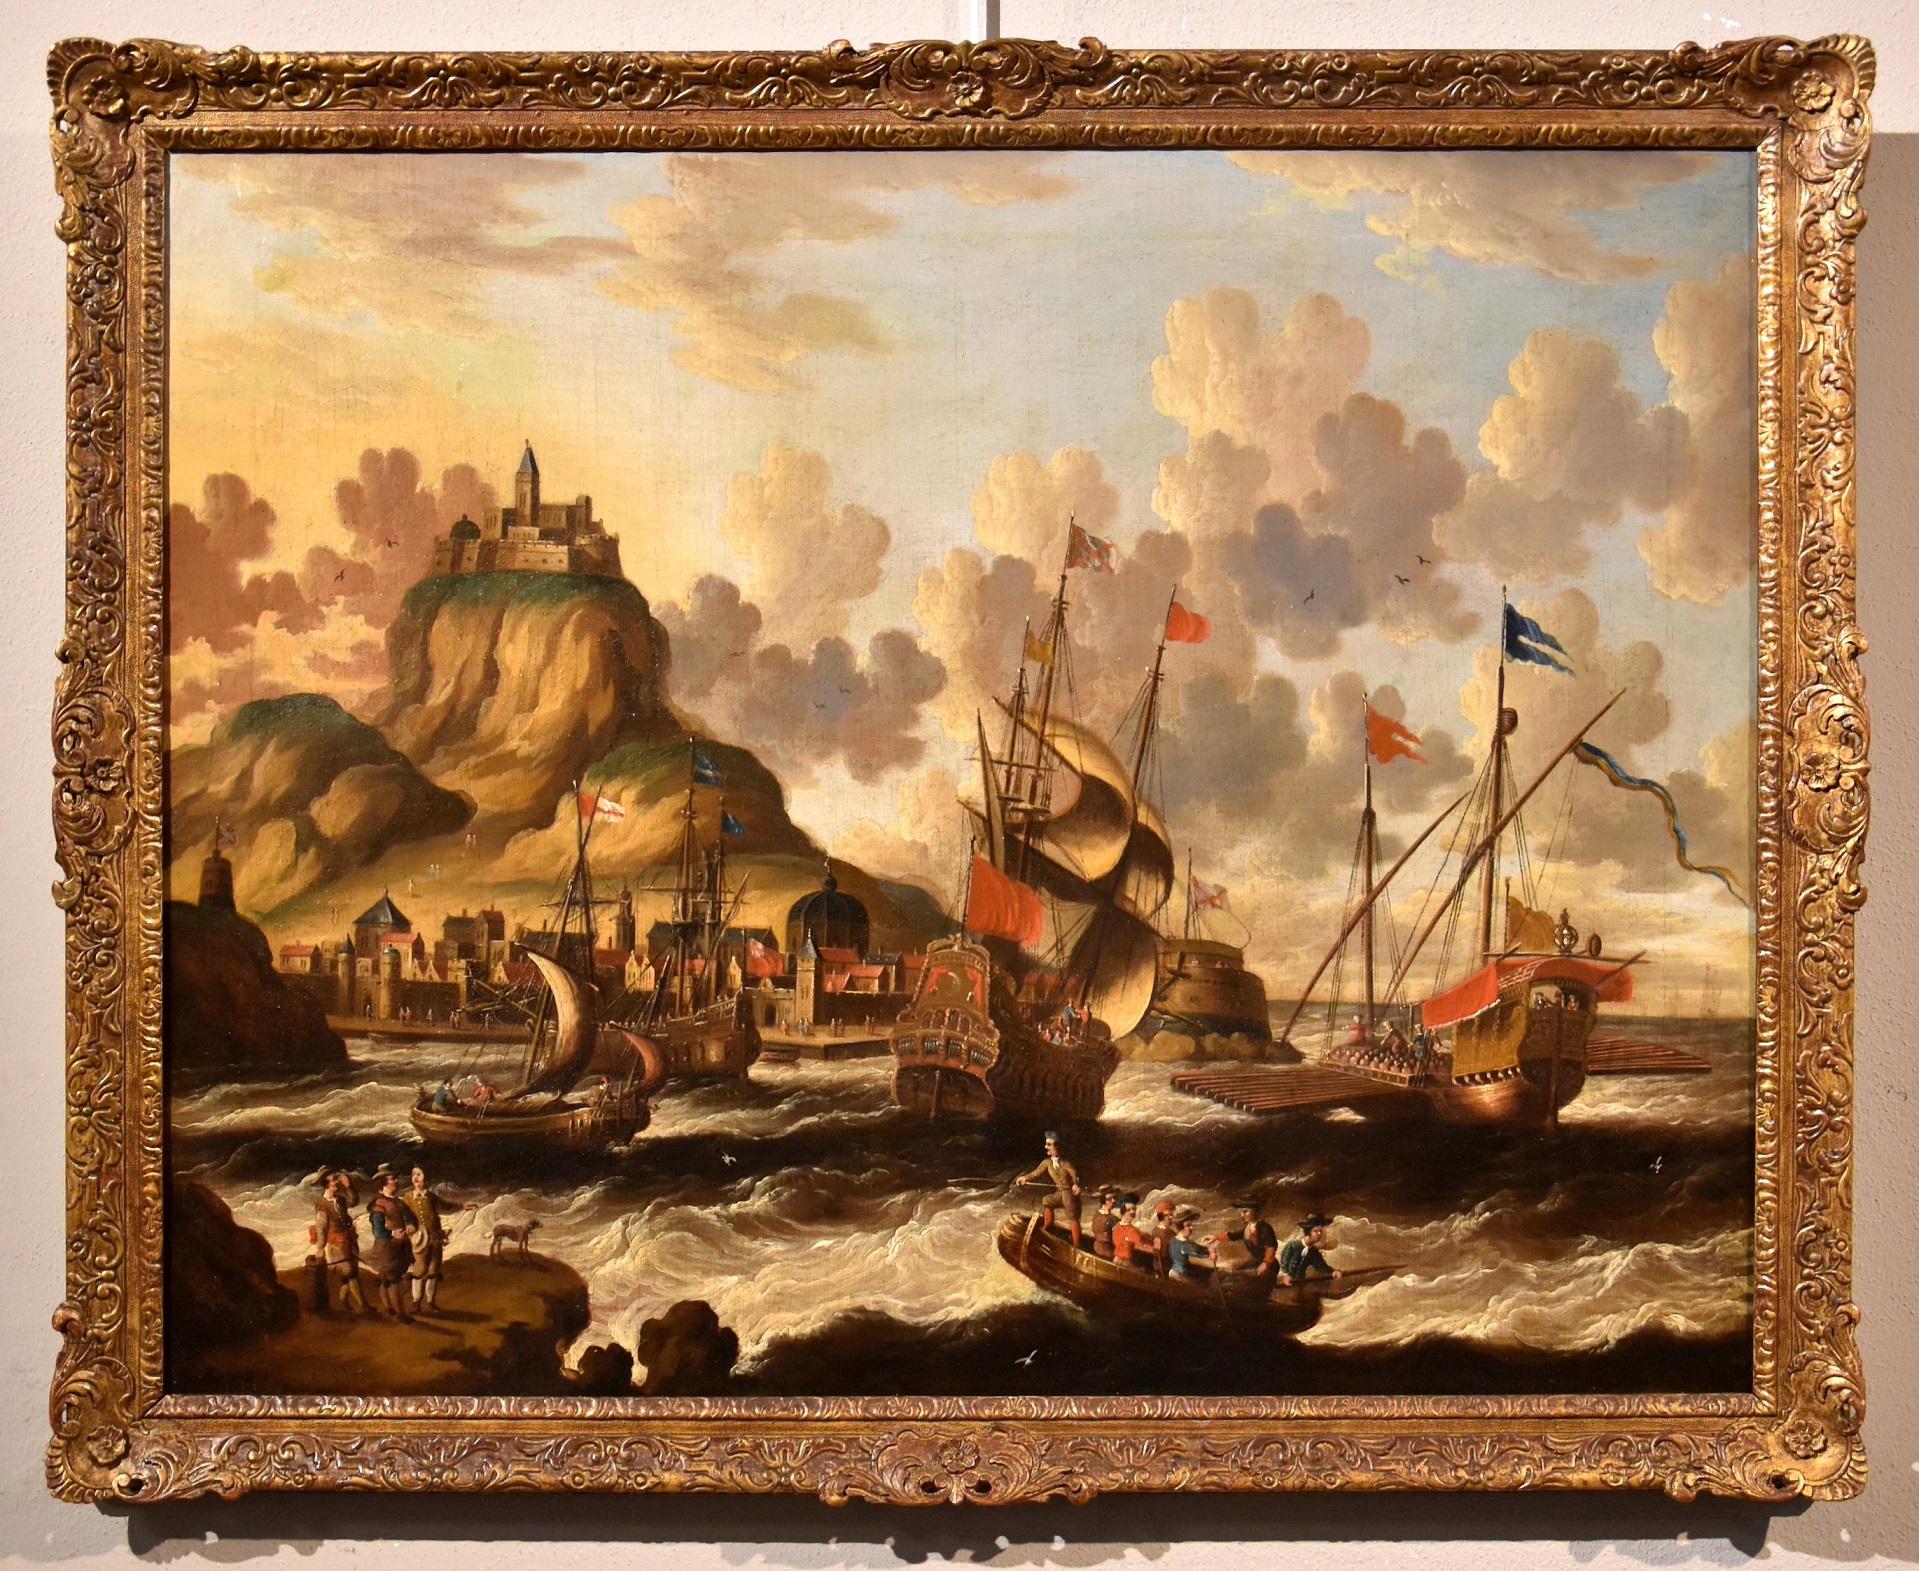 Landschaft Marina Van Der Velde, signierte flämische Malerei, Alter Meister, 17. Jahrhundert – Painting von Peter Van Der Velde (Antwerp 1634 - c.1714)